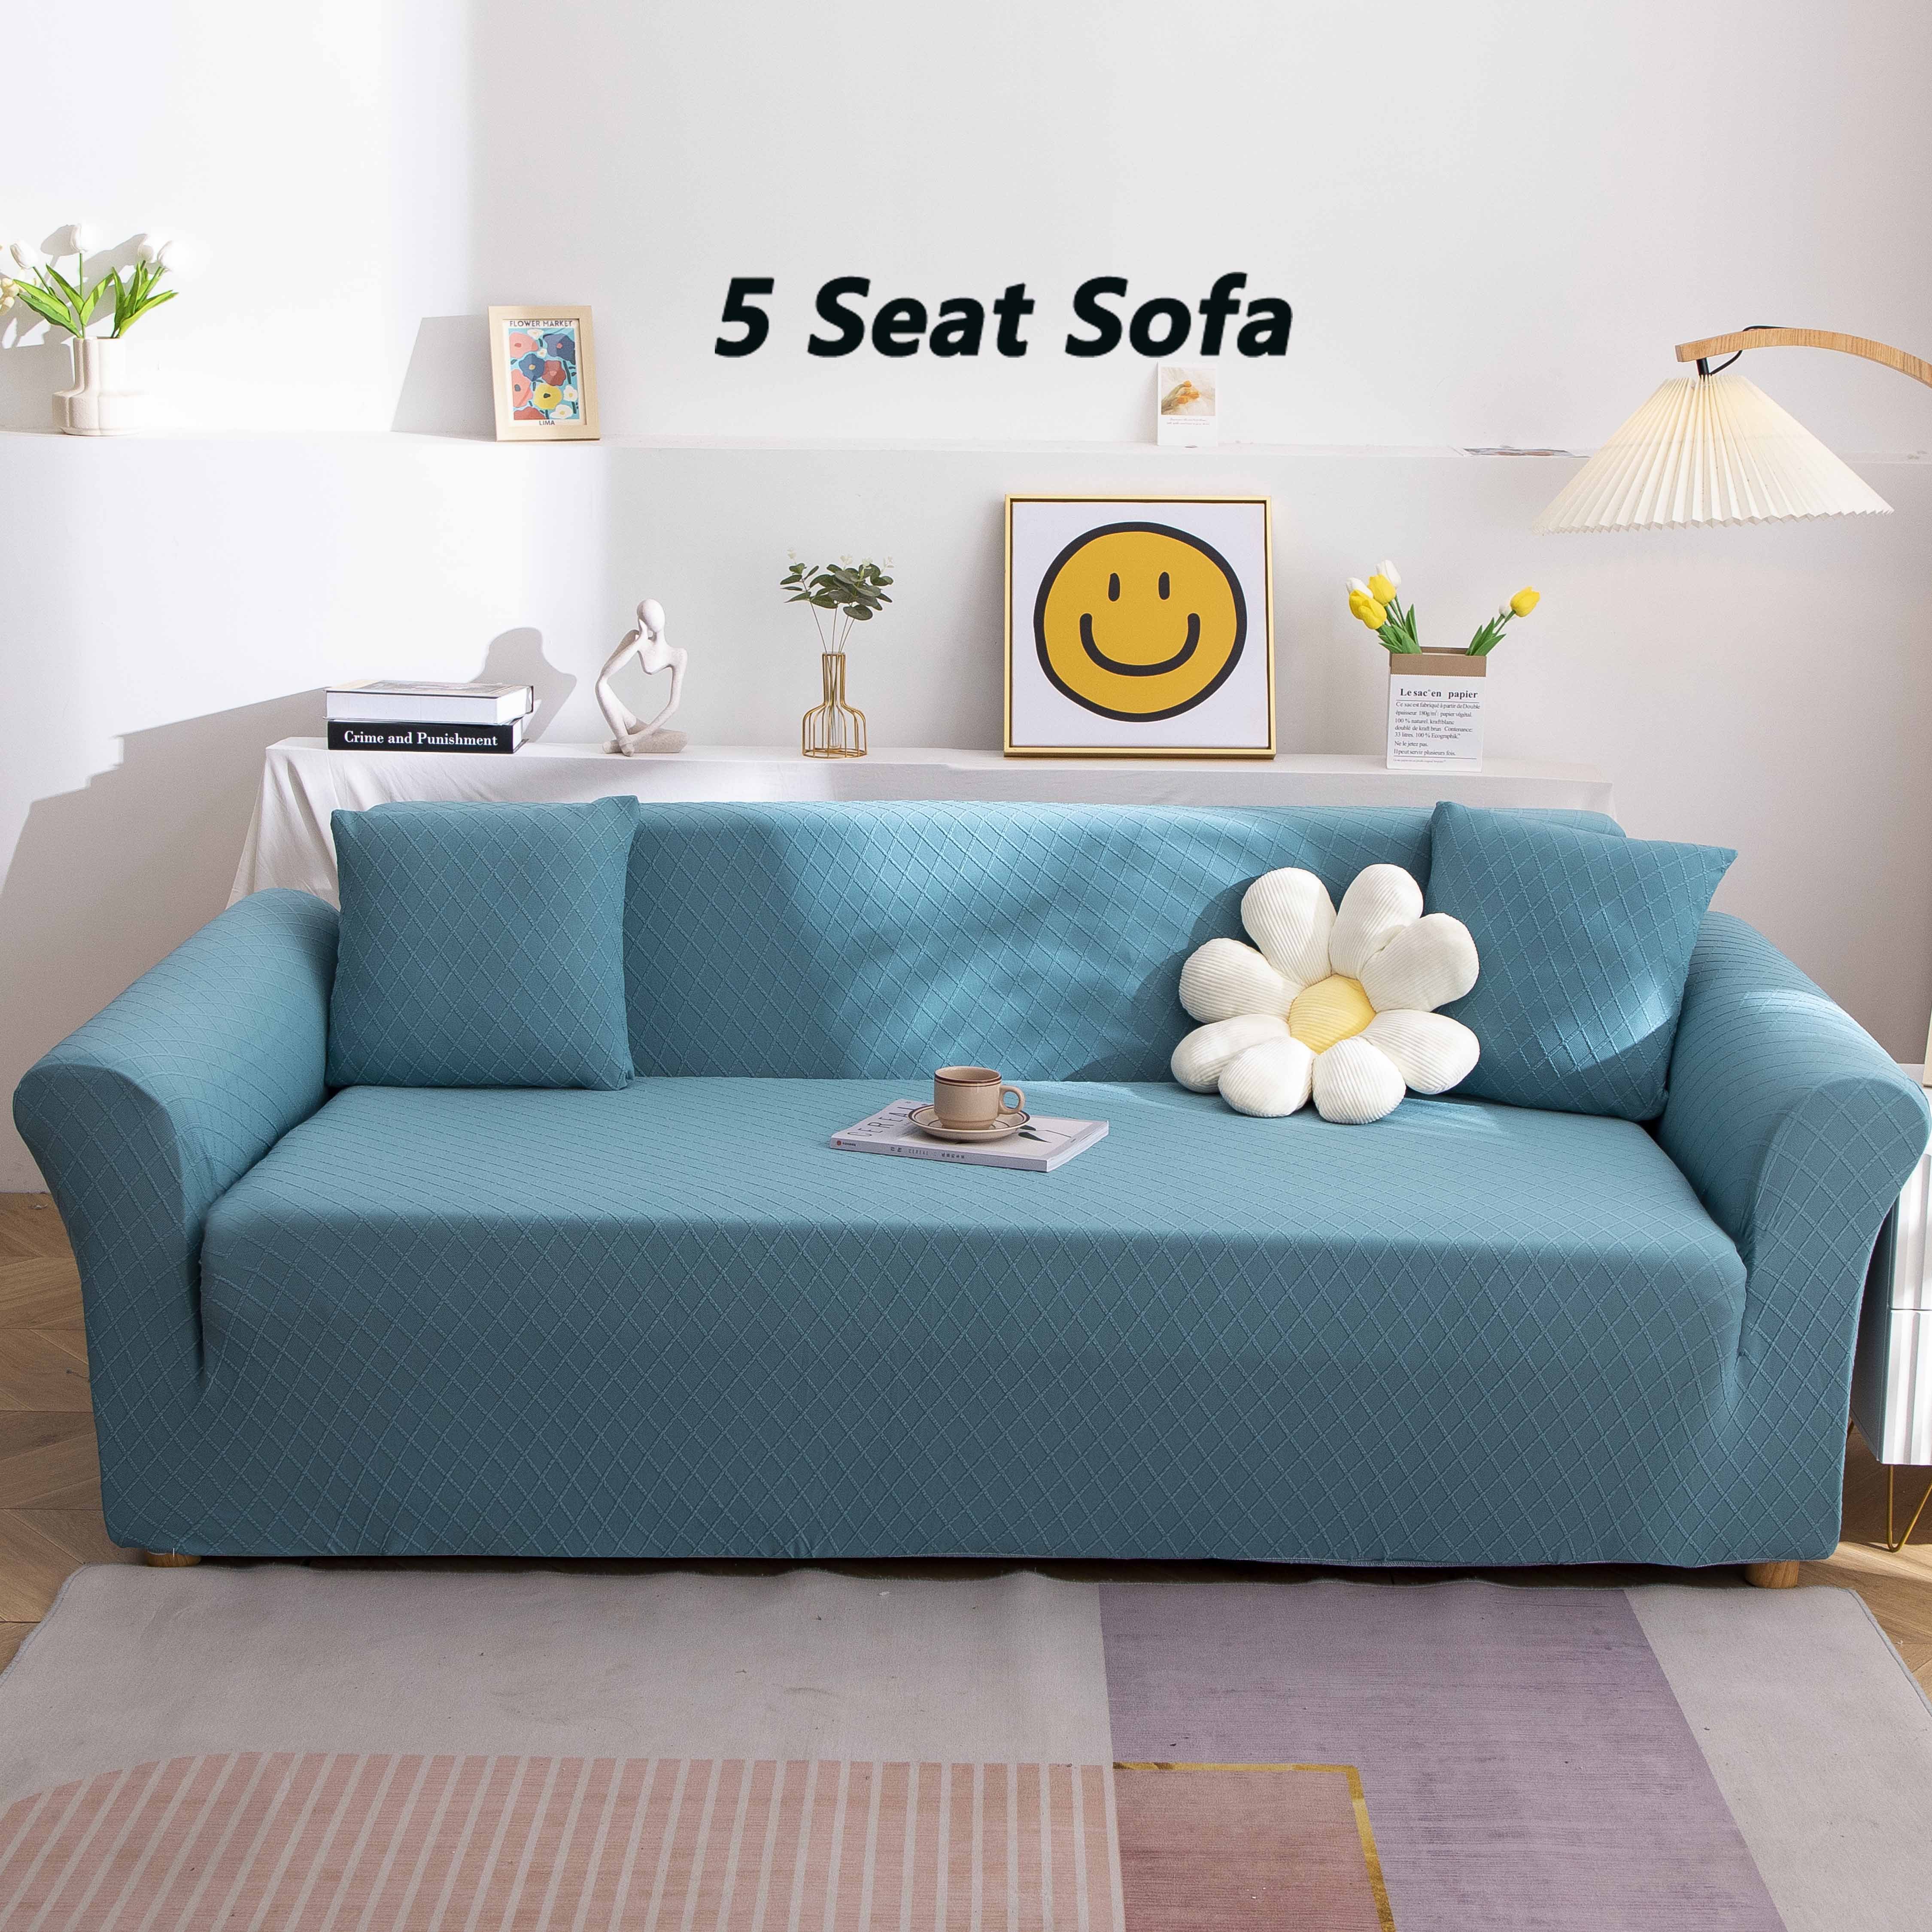 Funda sofa elastica-productos relacionados a bajo precio en AliExpress